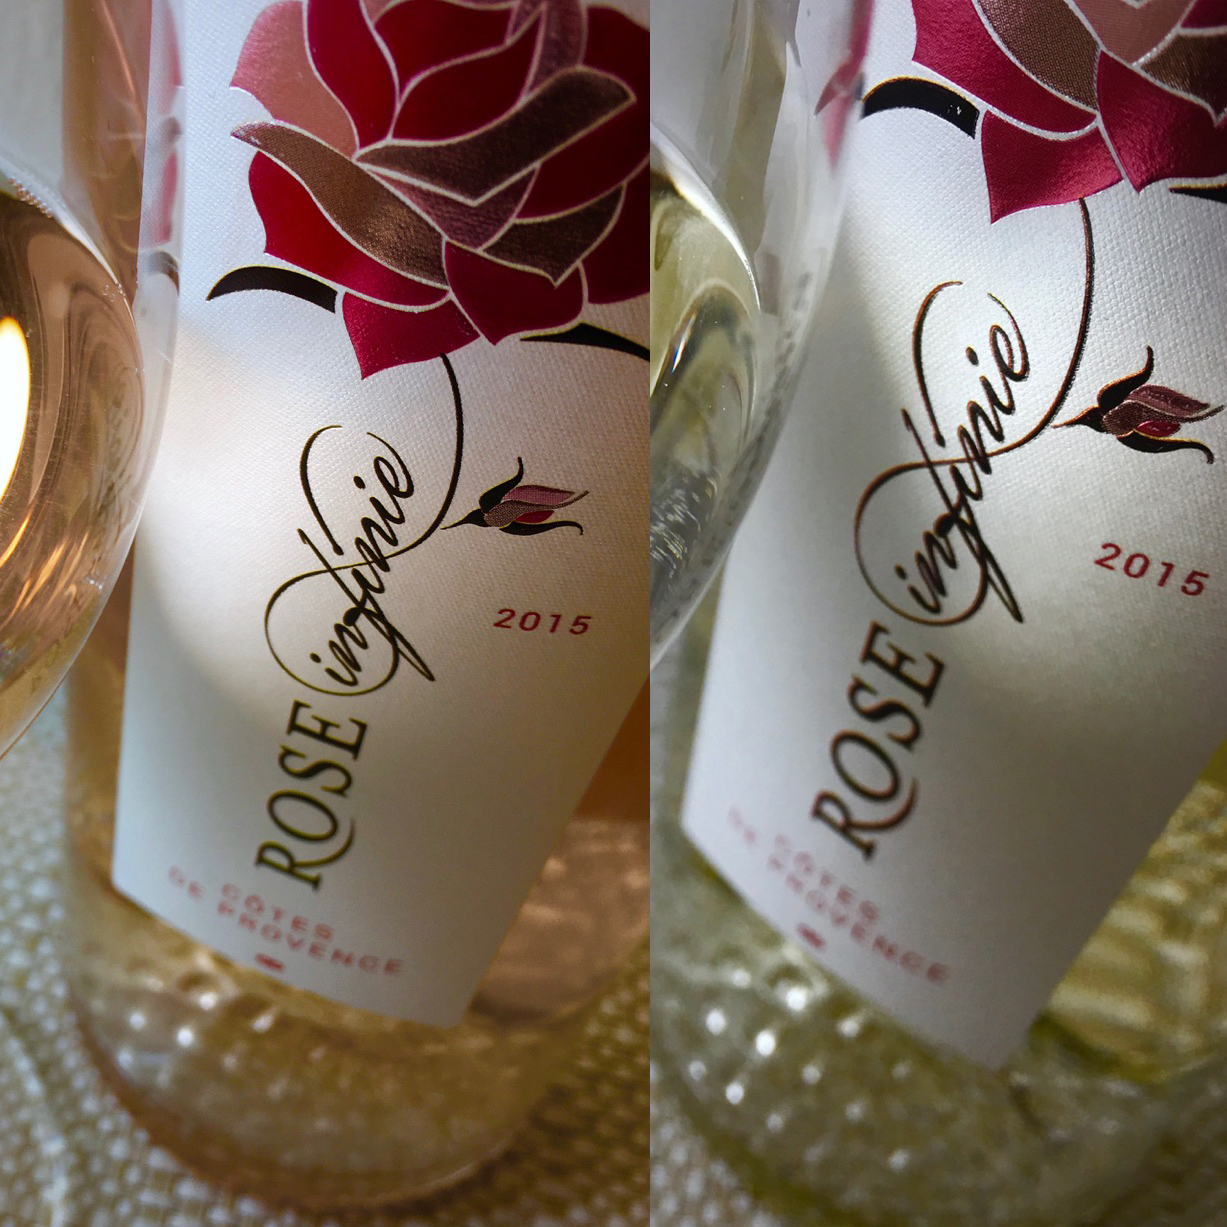 2015 Rose Infinie Côtes de Provence Rosé and Blanc